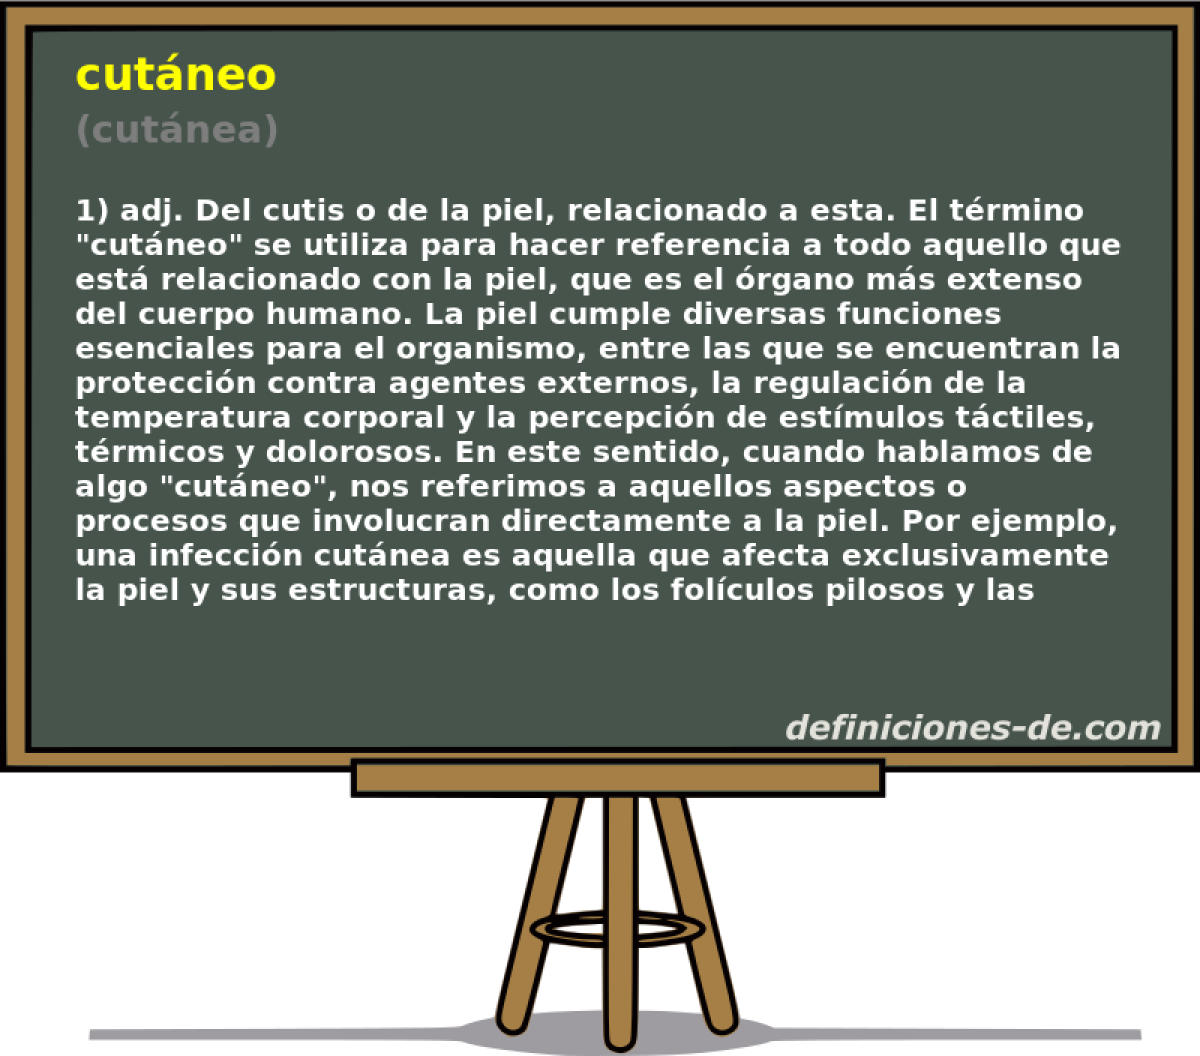 cutneo (cutnea)